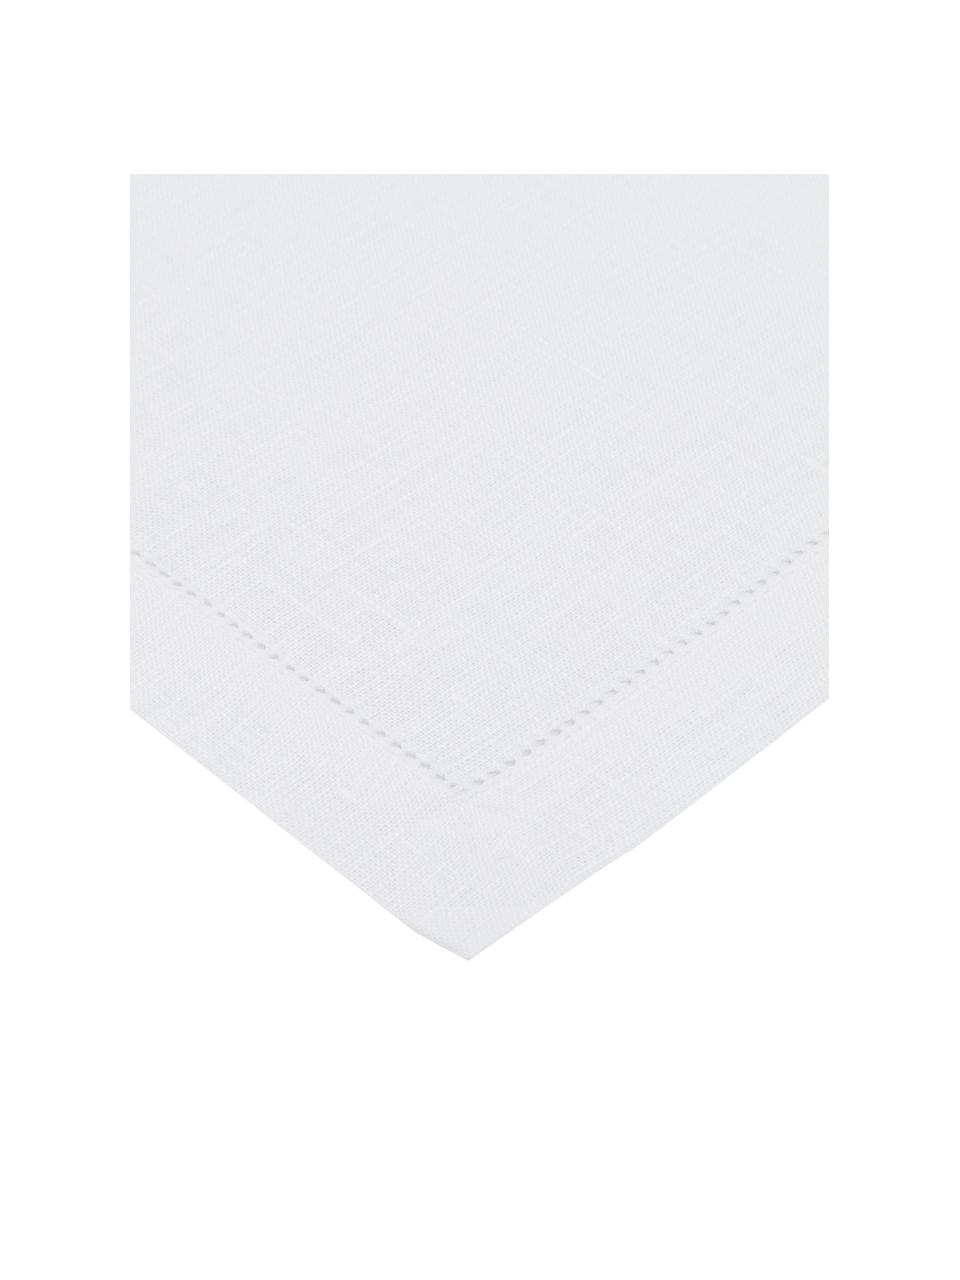 Sevilletas de lino Alanta, 6 uds., Blanco nieve, An 42 x L 42 cm